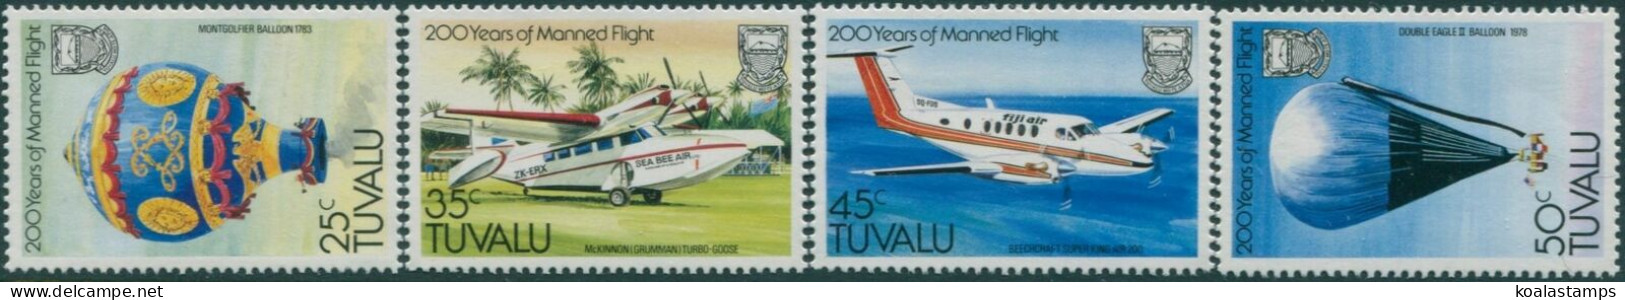 Tuvalu 1983 SG225-228 Manned Flight Set MNH - Tuvalu